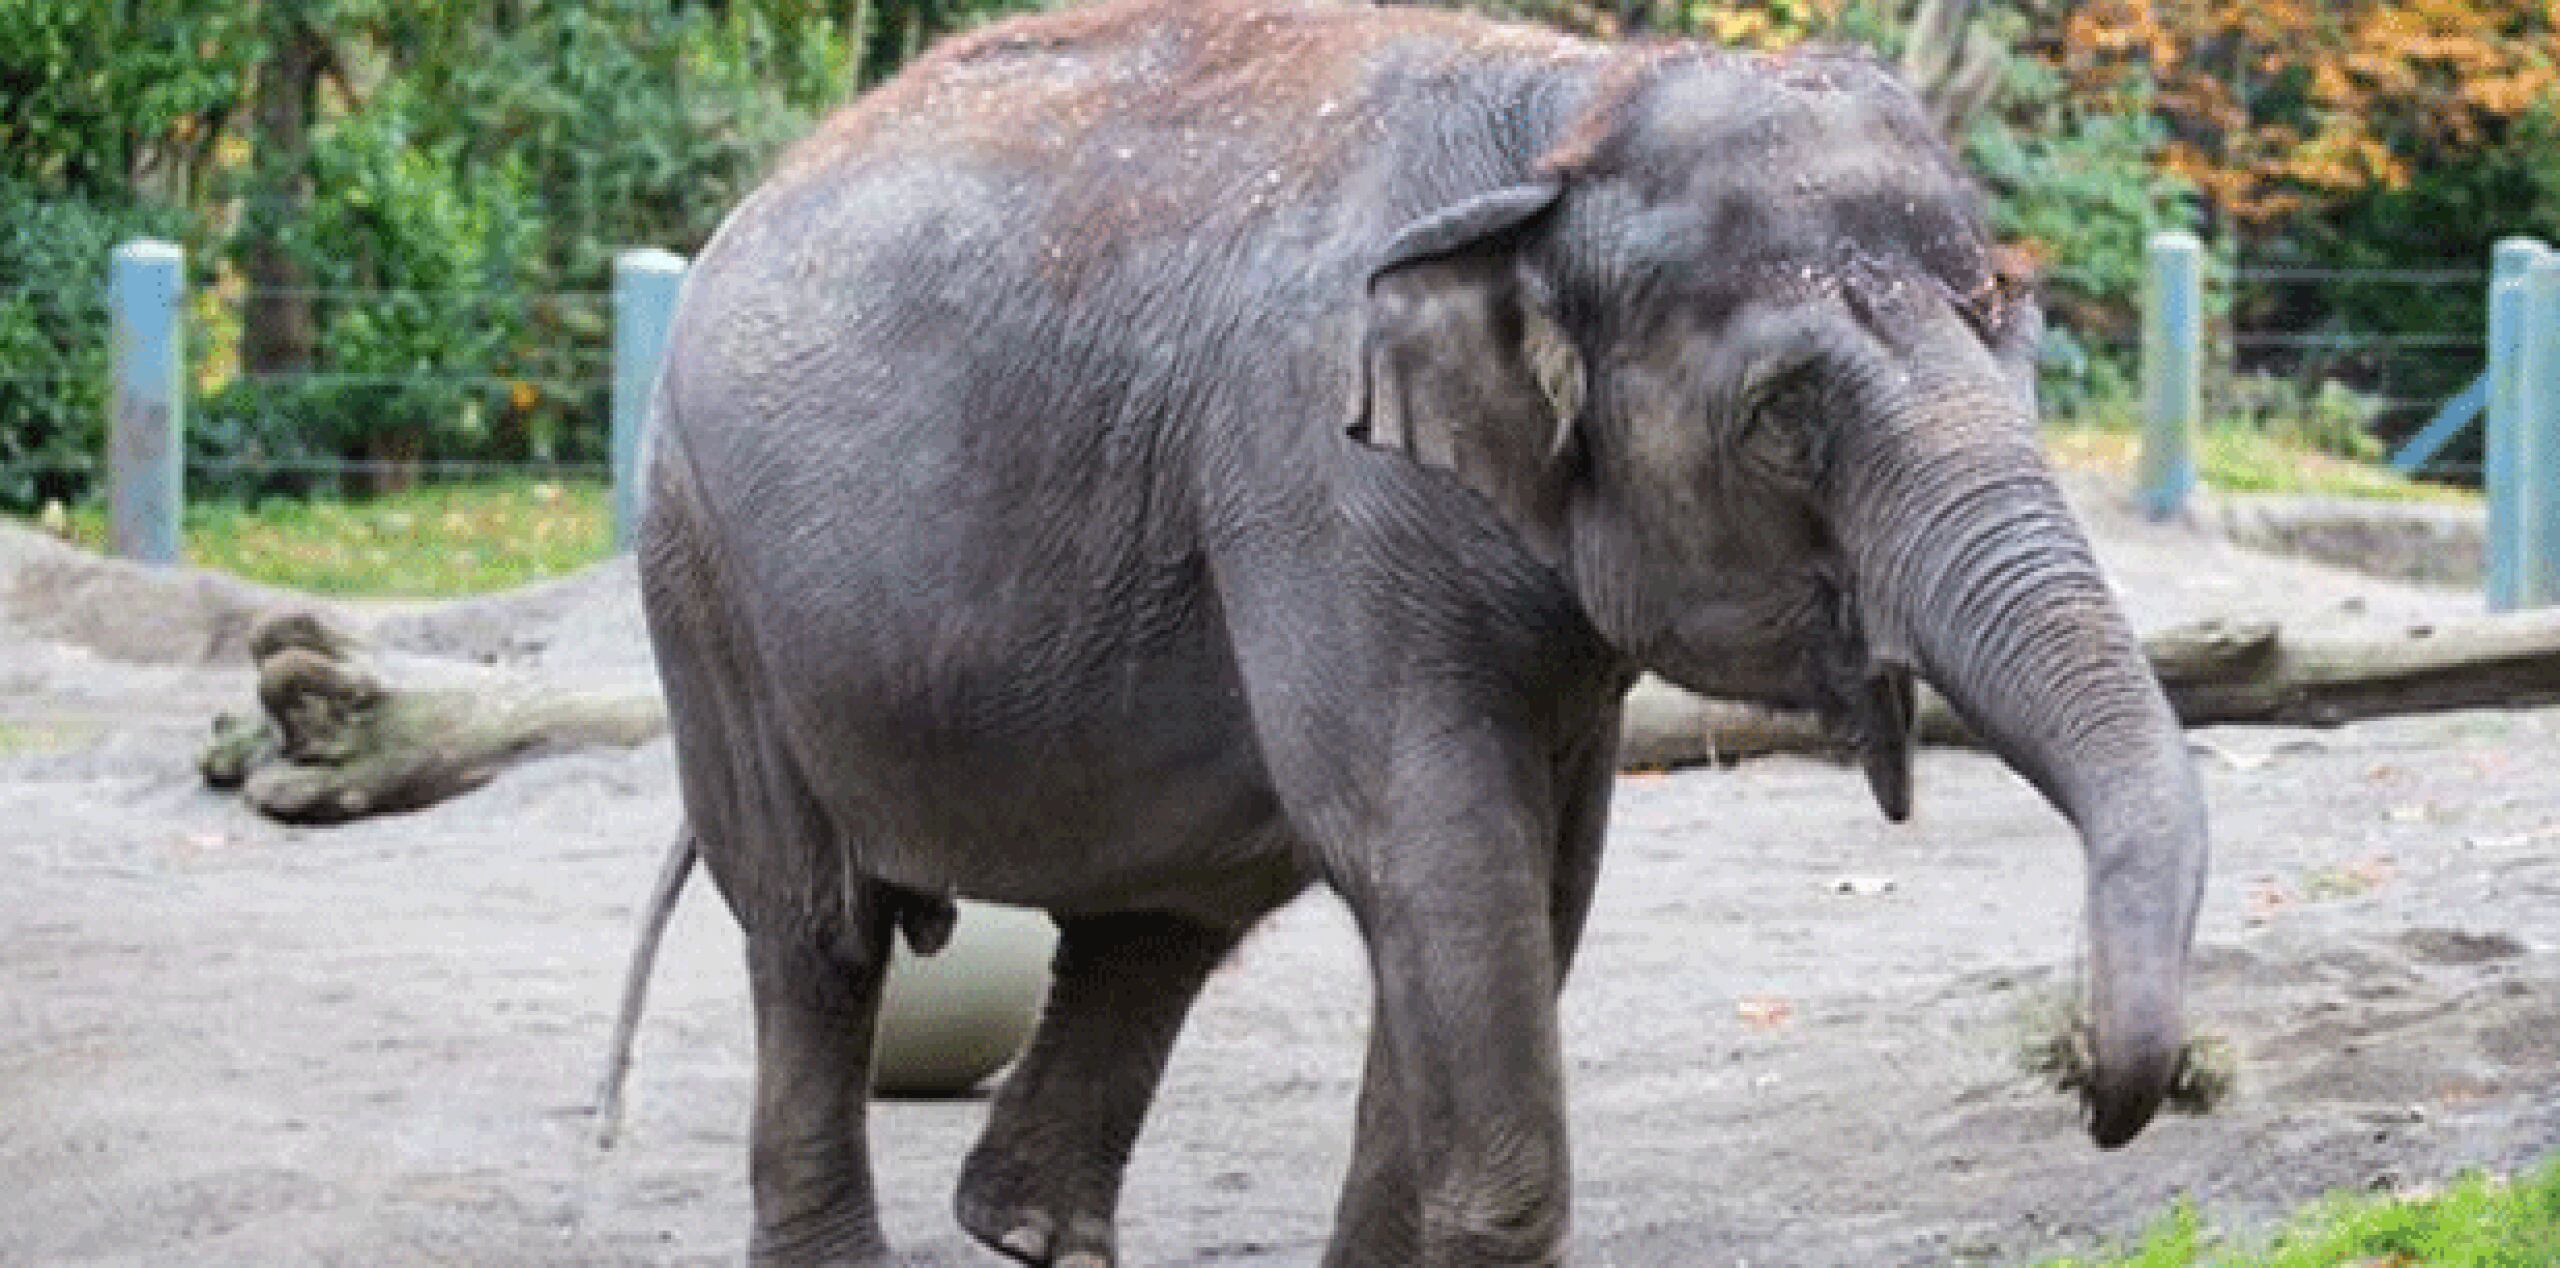 Representantes del zoológico han señalado que las elefantas podrán sumarse a una manada mayor y multigeneracional en Oklahoma City. (Twitter)